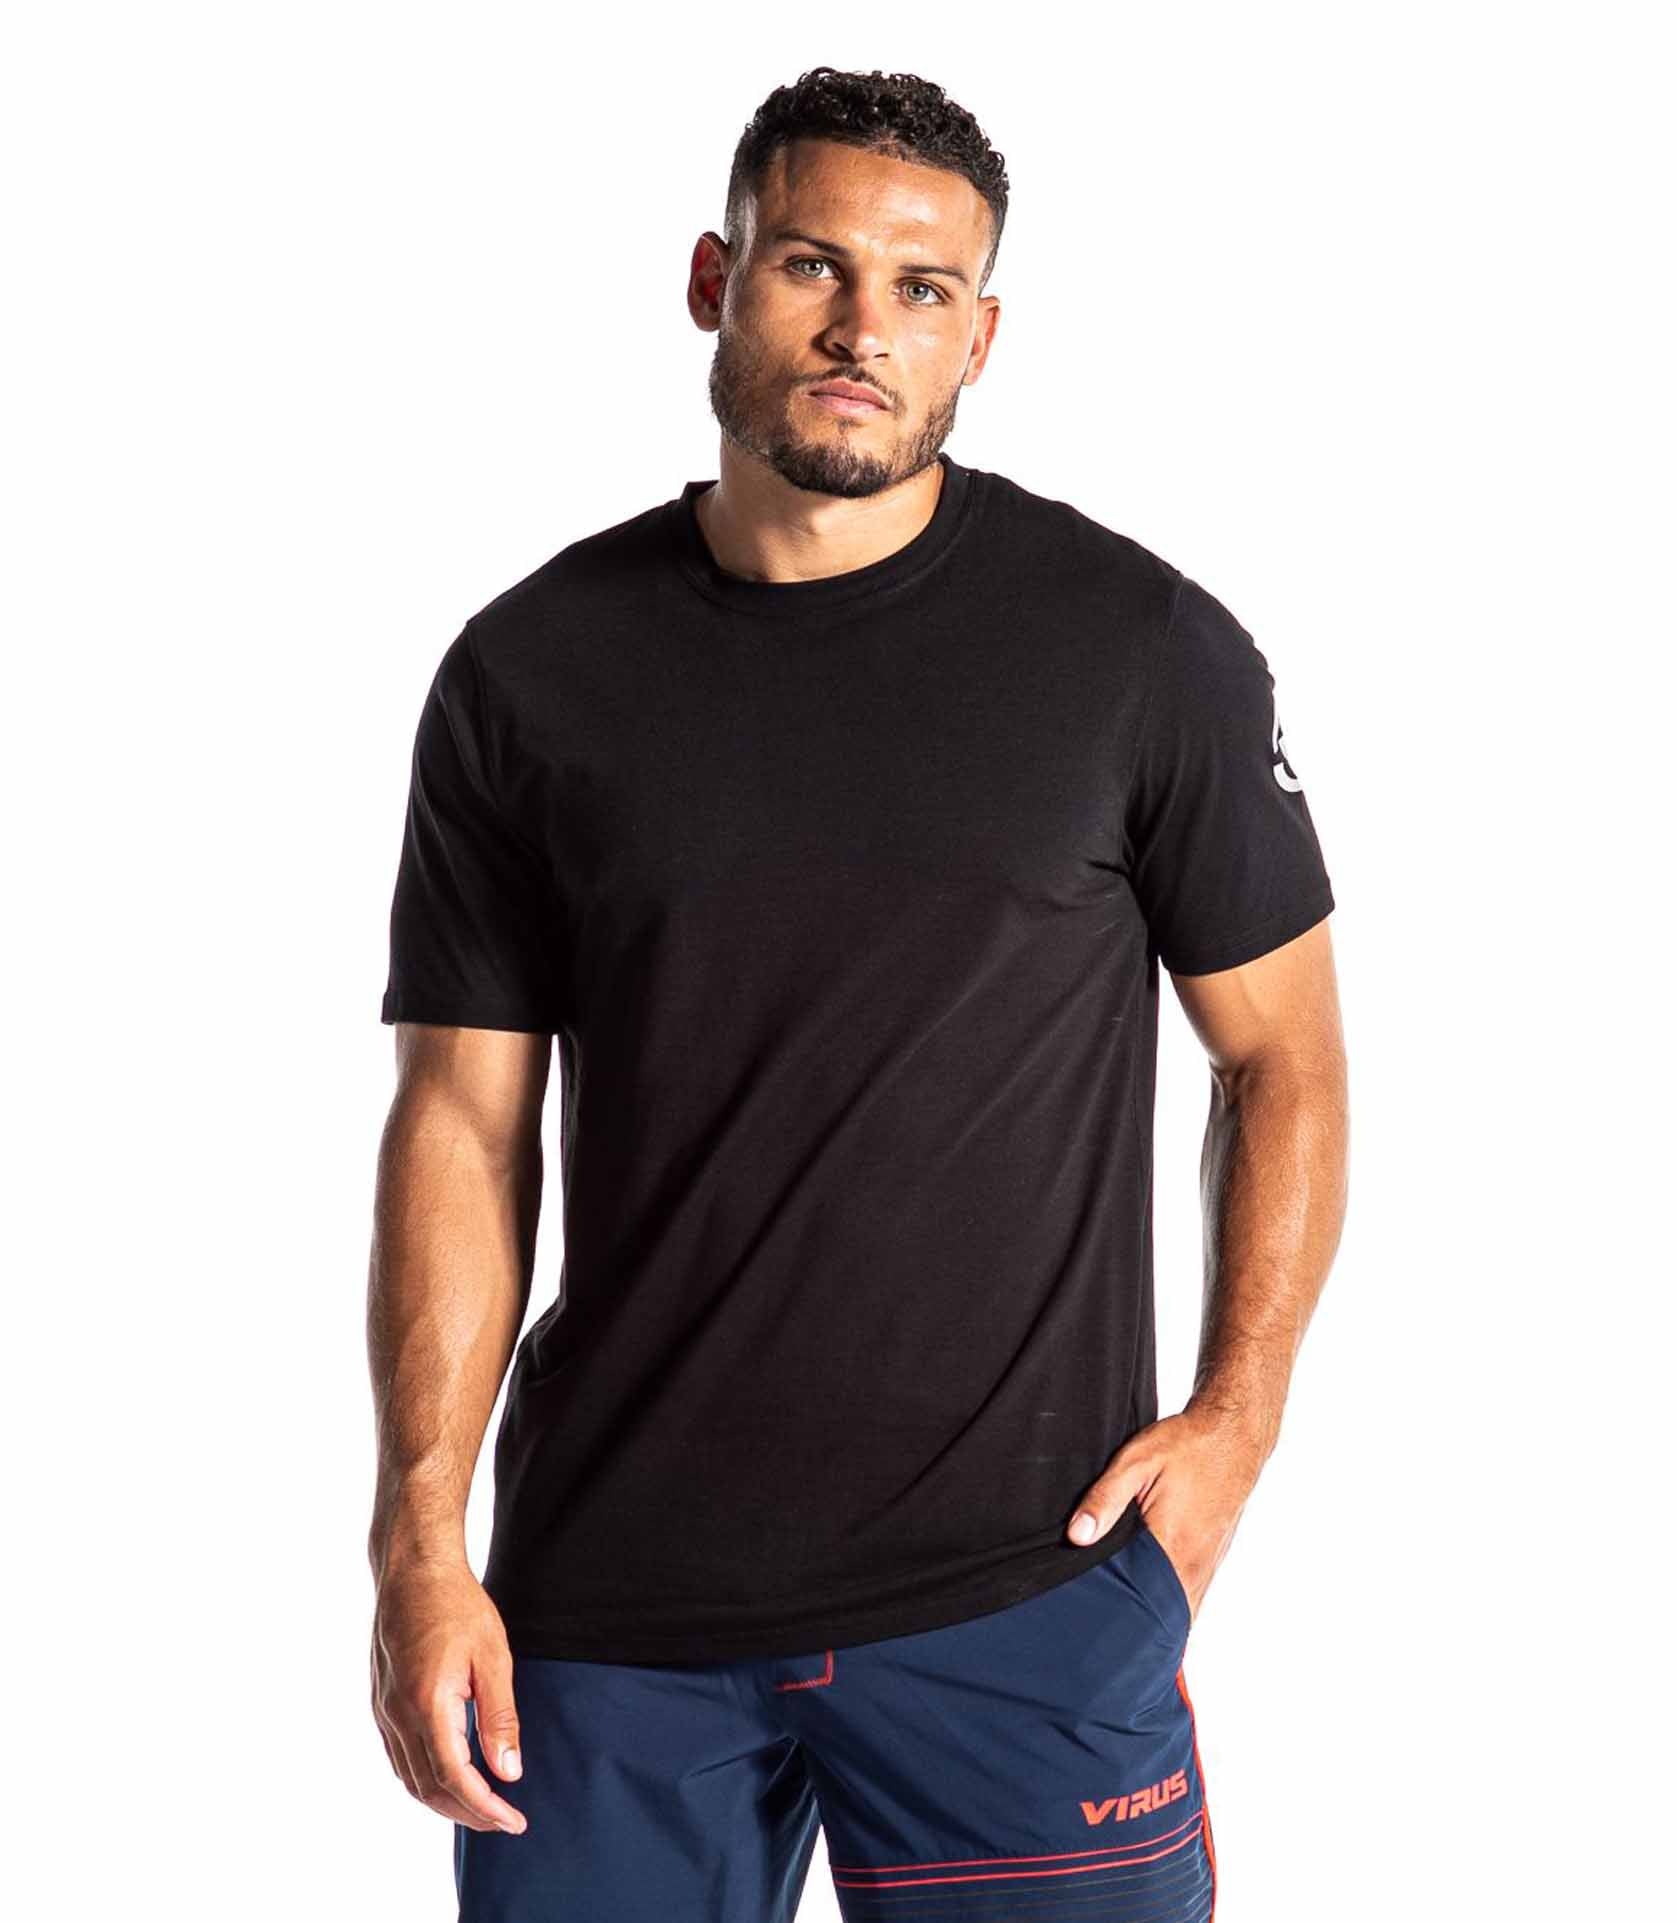 VIRUS Men's Bioceramic Short Sleeve Compression Top Black Gold T-shirt